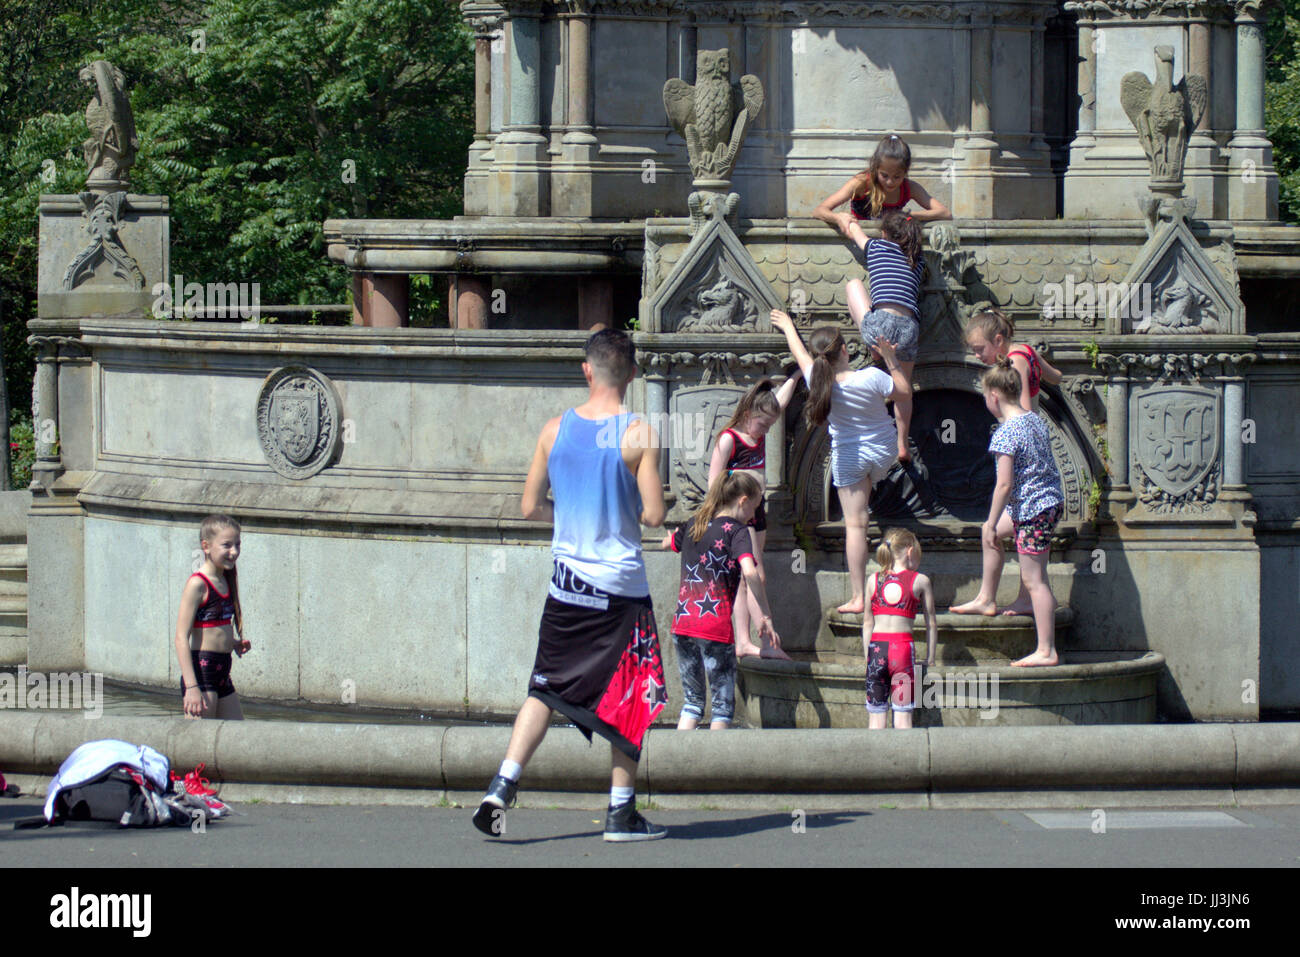 Glasgow, Ecosse, Royaume-Uni. 18 juillet. En été, les retours et les gens apprécient l'été dans la ville, comme l'Écosse Kelvingrove Park attire certains des UK torride Crédit météo Gérard Ferry/Alamy news Banque D'Images